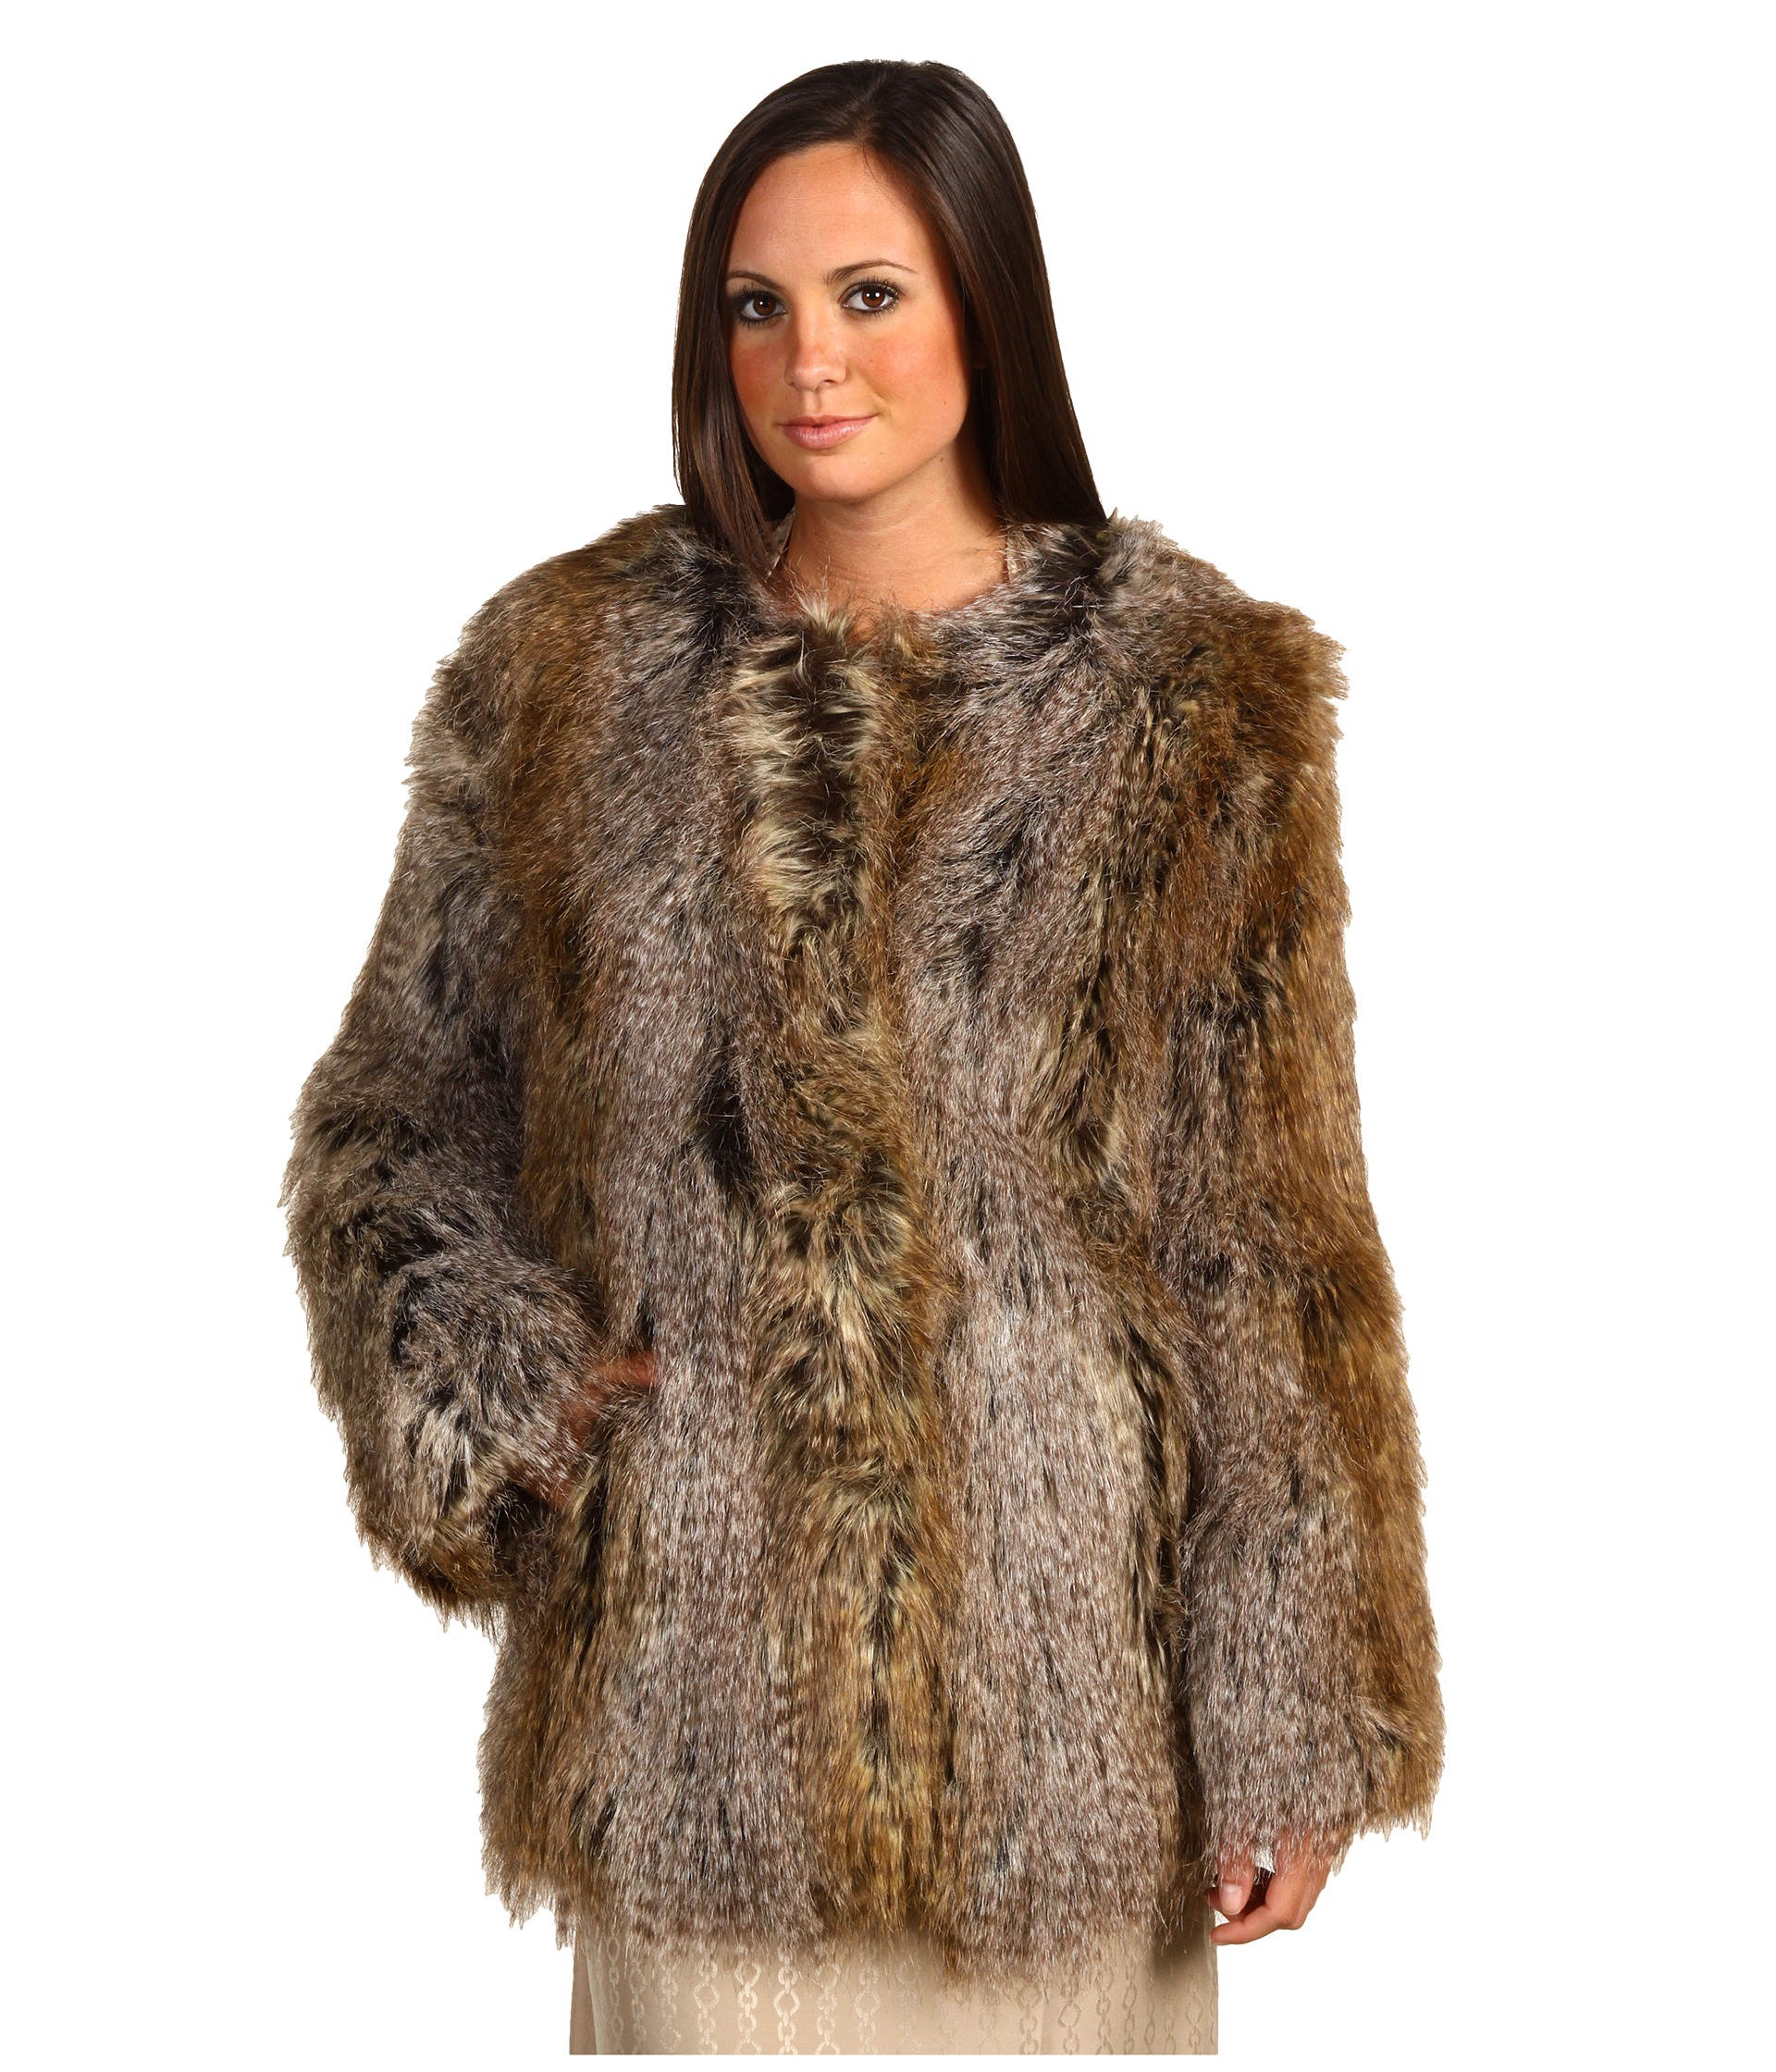 Trina Turk   Faux Fur L/S Coat